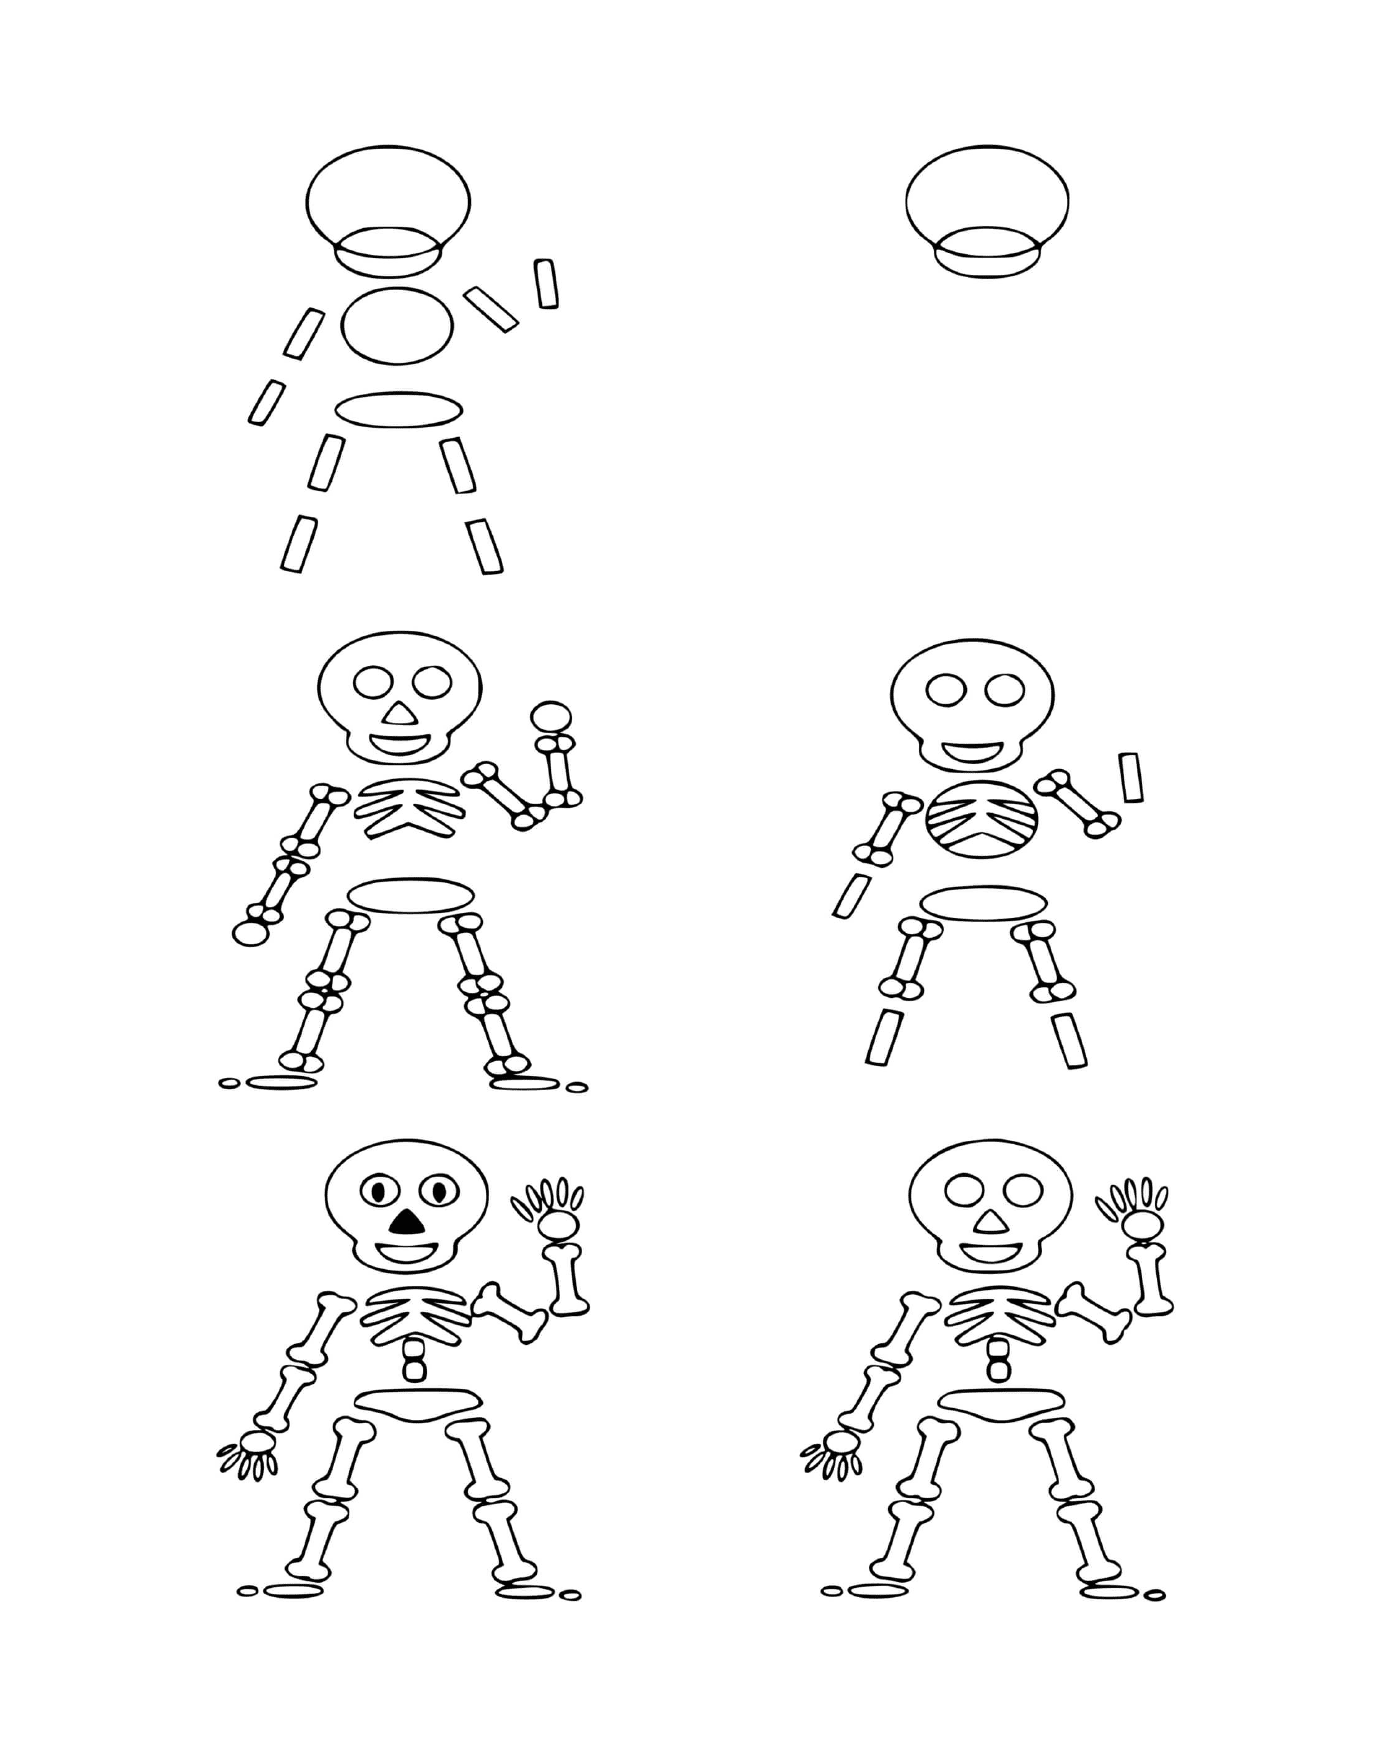  Cómo dibujar un esqueleto 